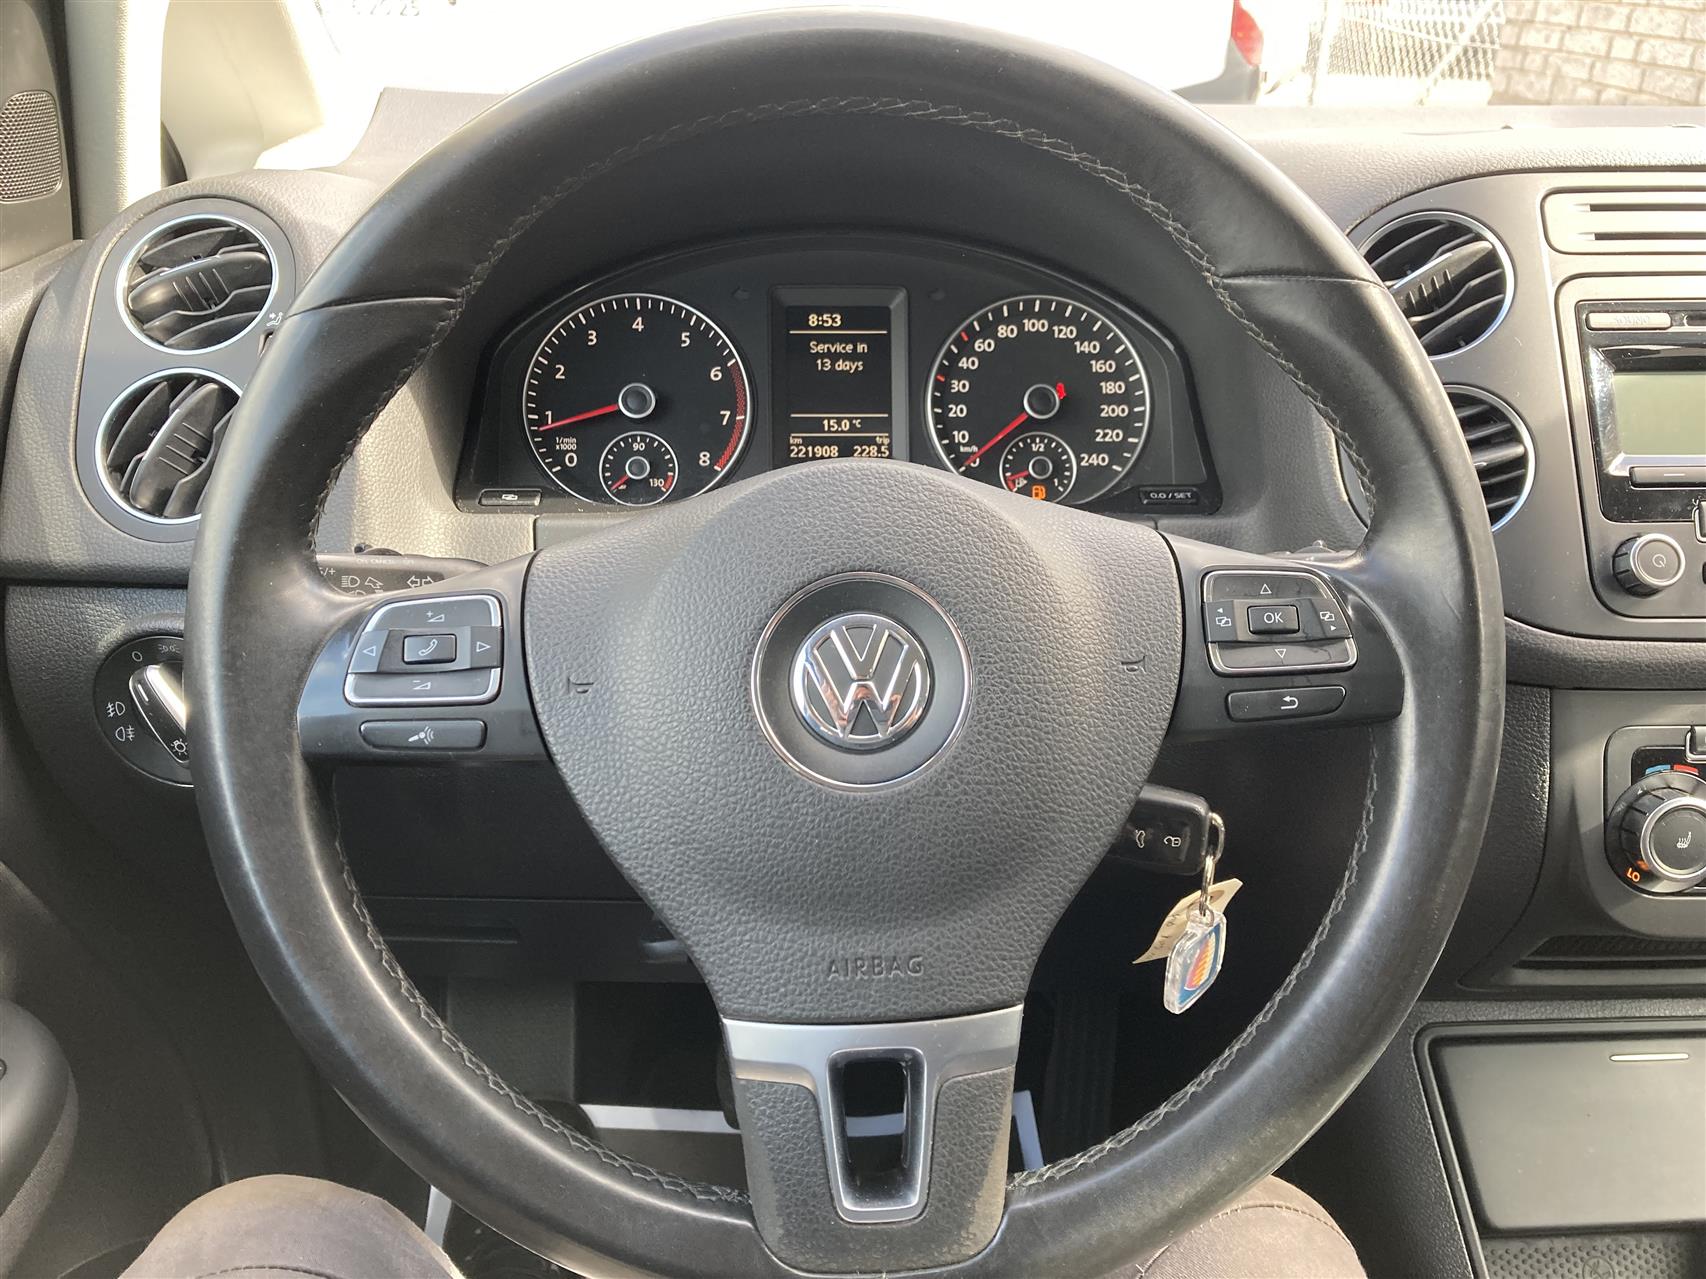 Billede af VW Golf Plus 1,2 BlueMotion TSI Comfortline 105HK